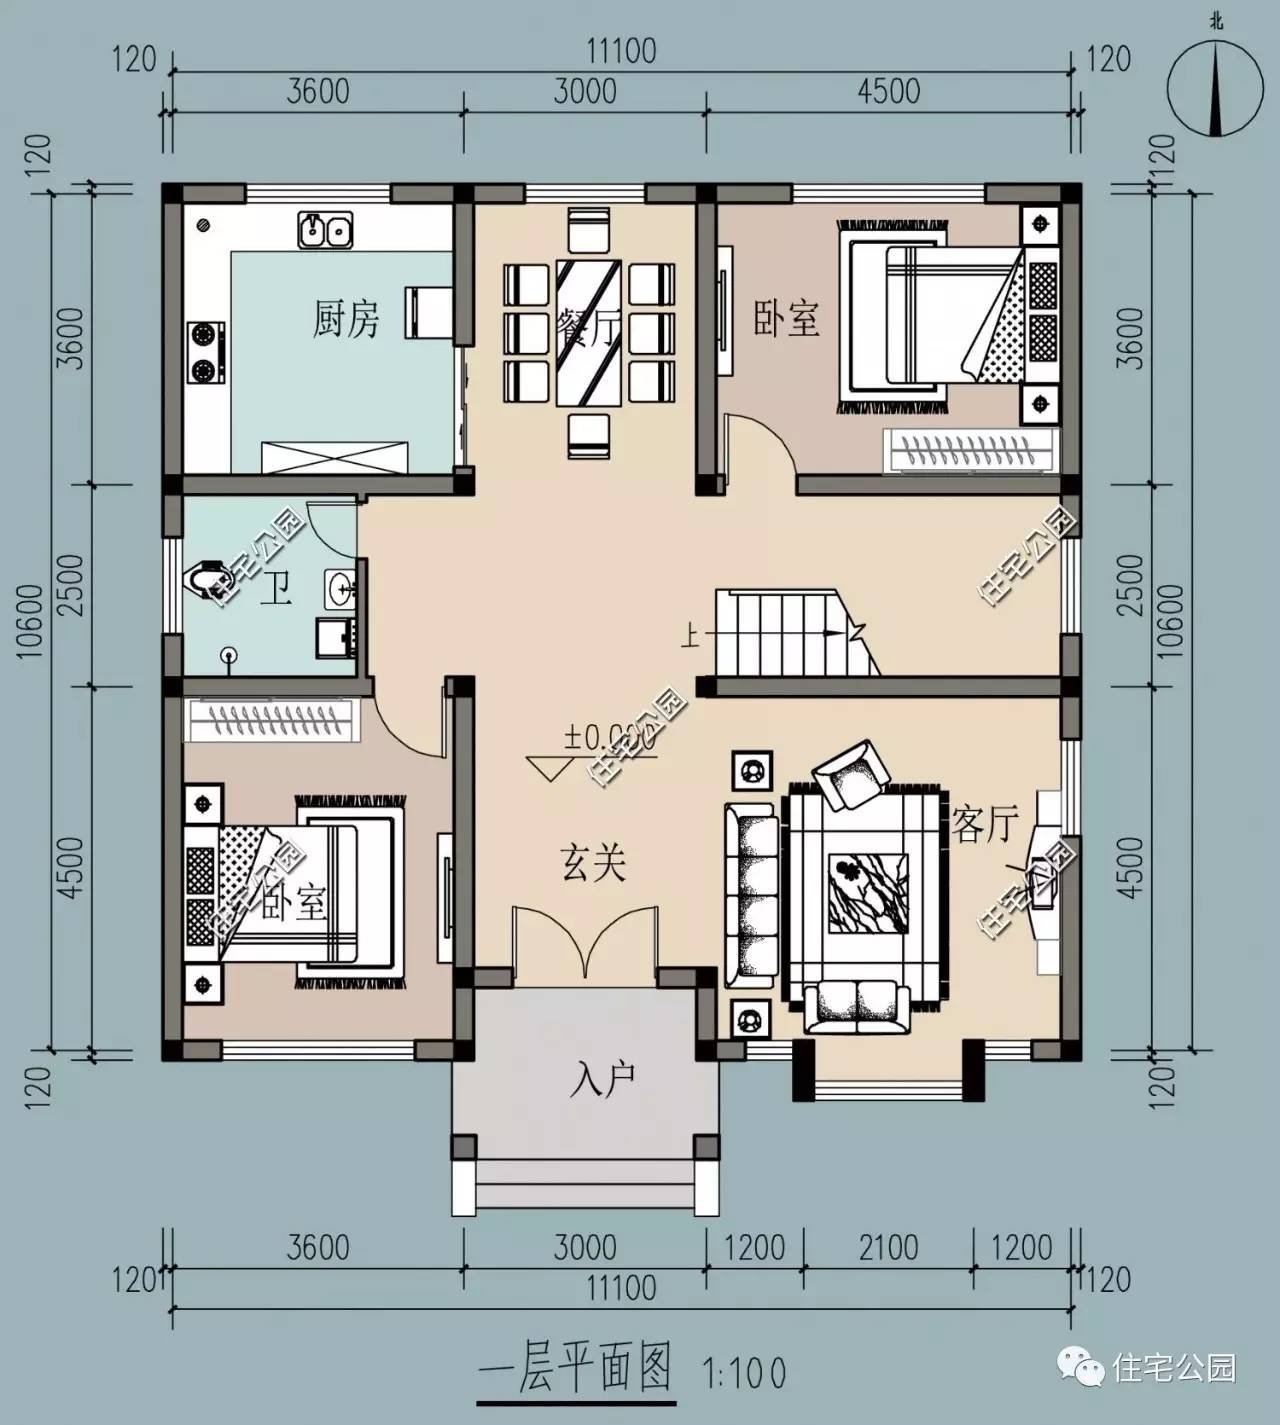 6卧室,11x12米二层经典欧式别墅丨建筑师作品展